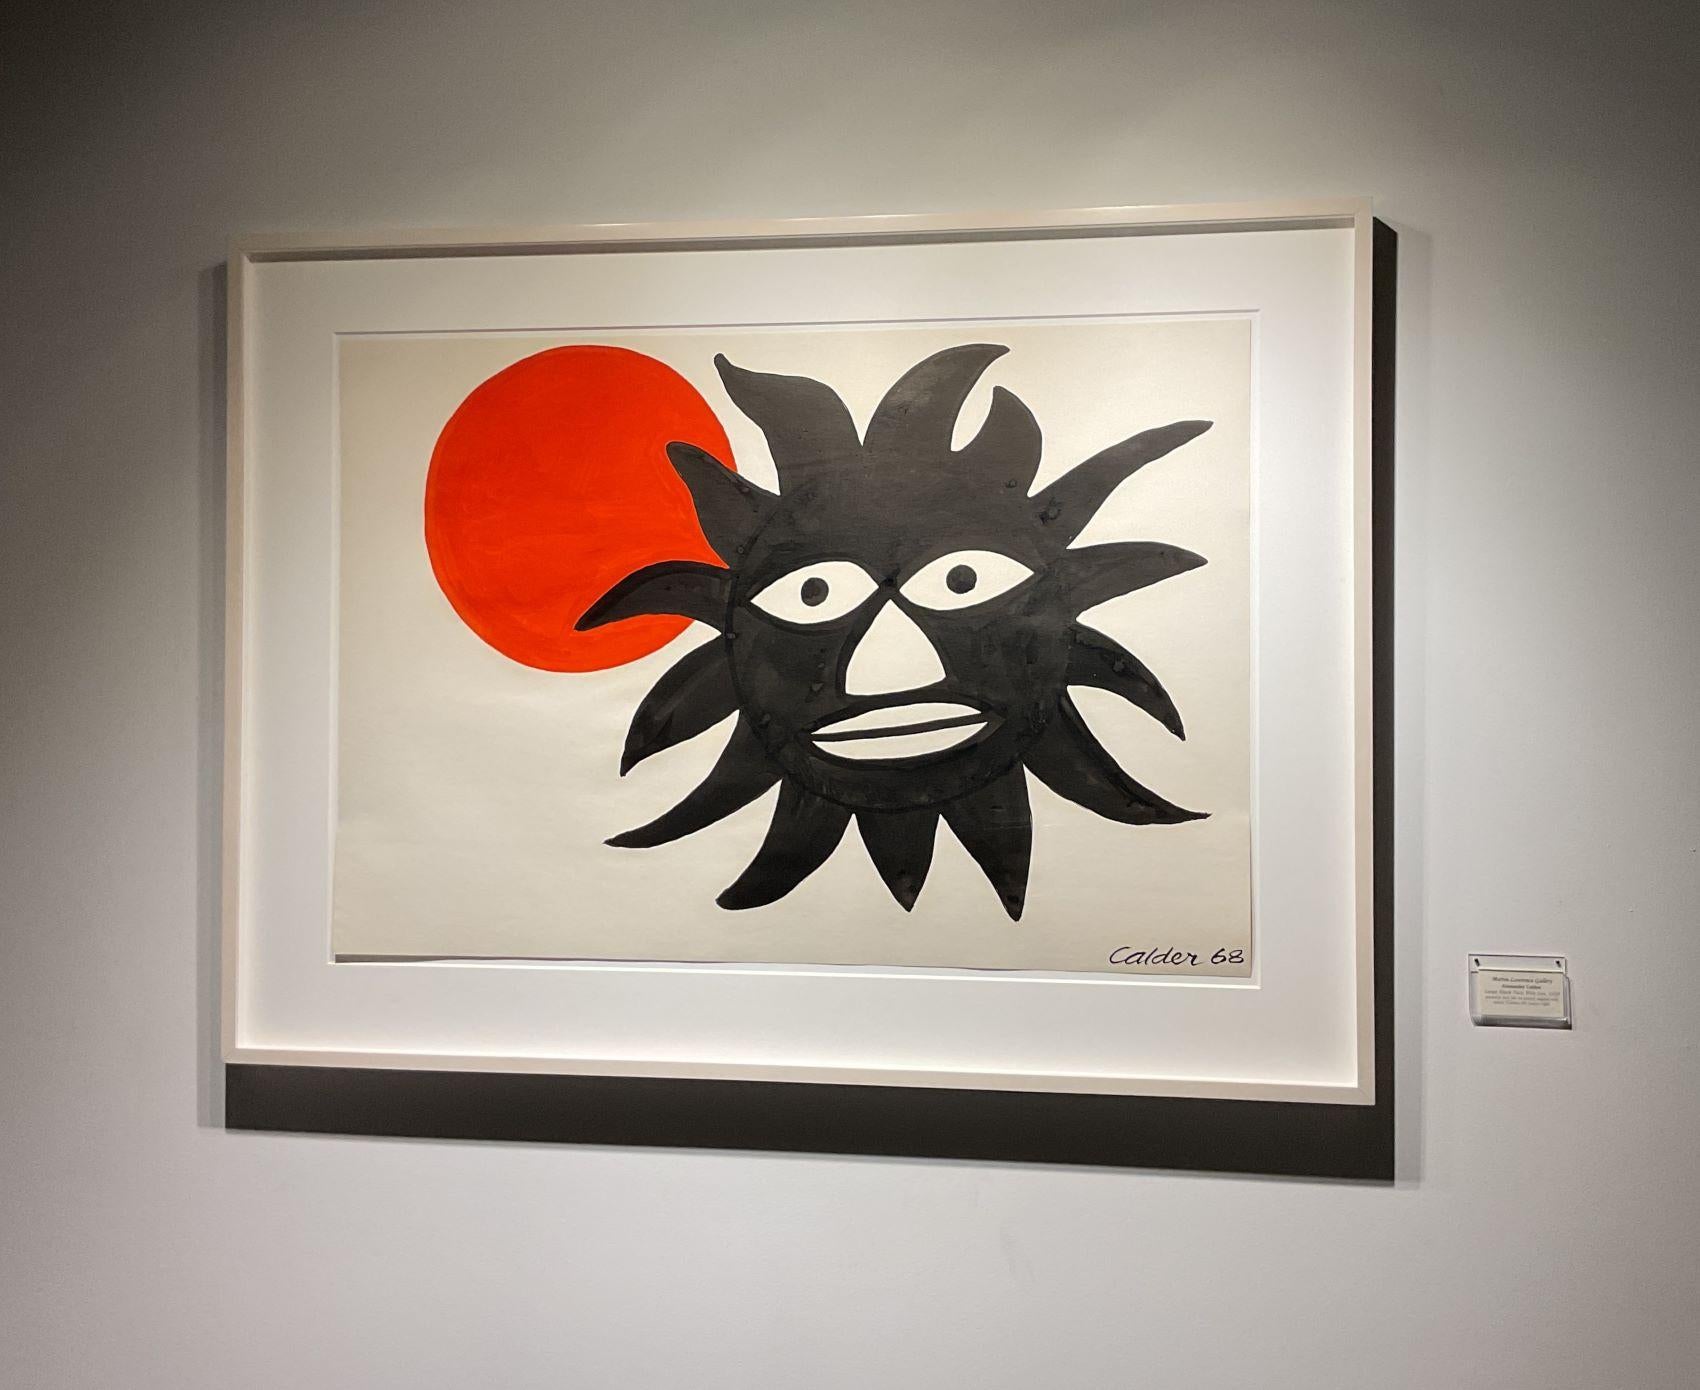 Großes schwarzes Gesicht mit Sonne, 1968 (Moderne), Painting, von Alexander Calder